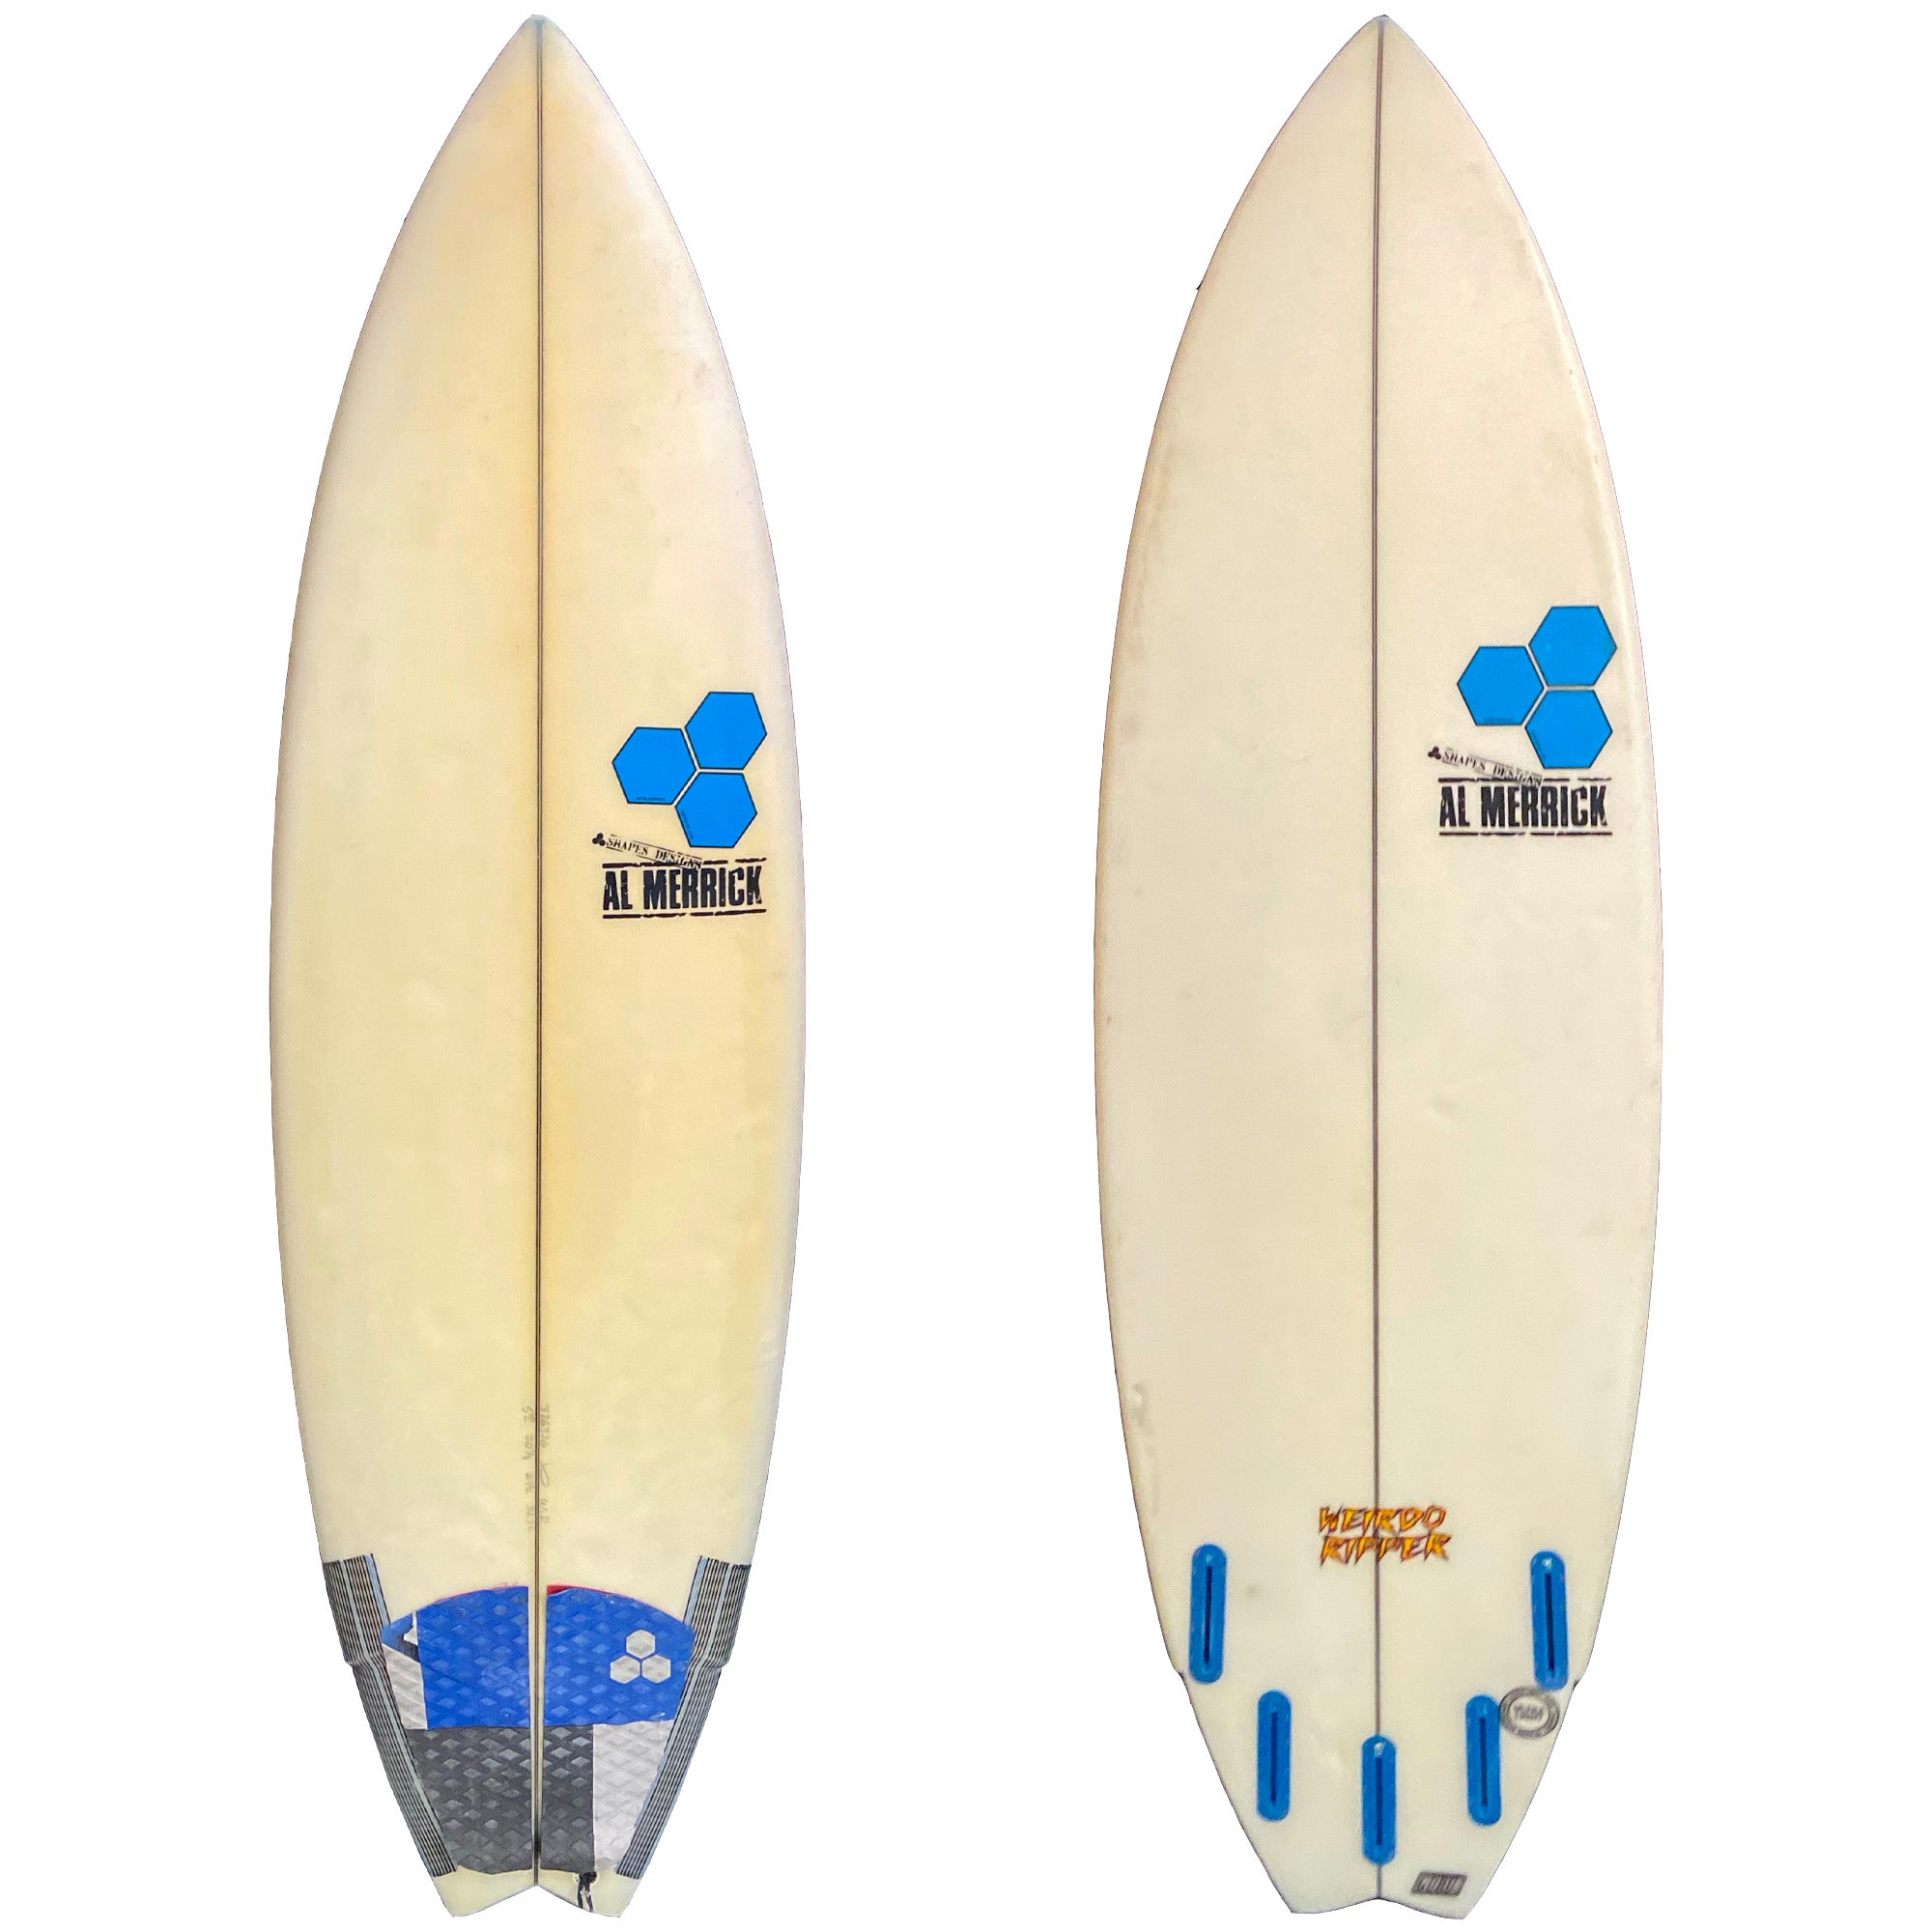 Channel Islands Weirdo Ripper 5'10 Used Surfboard